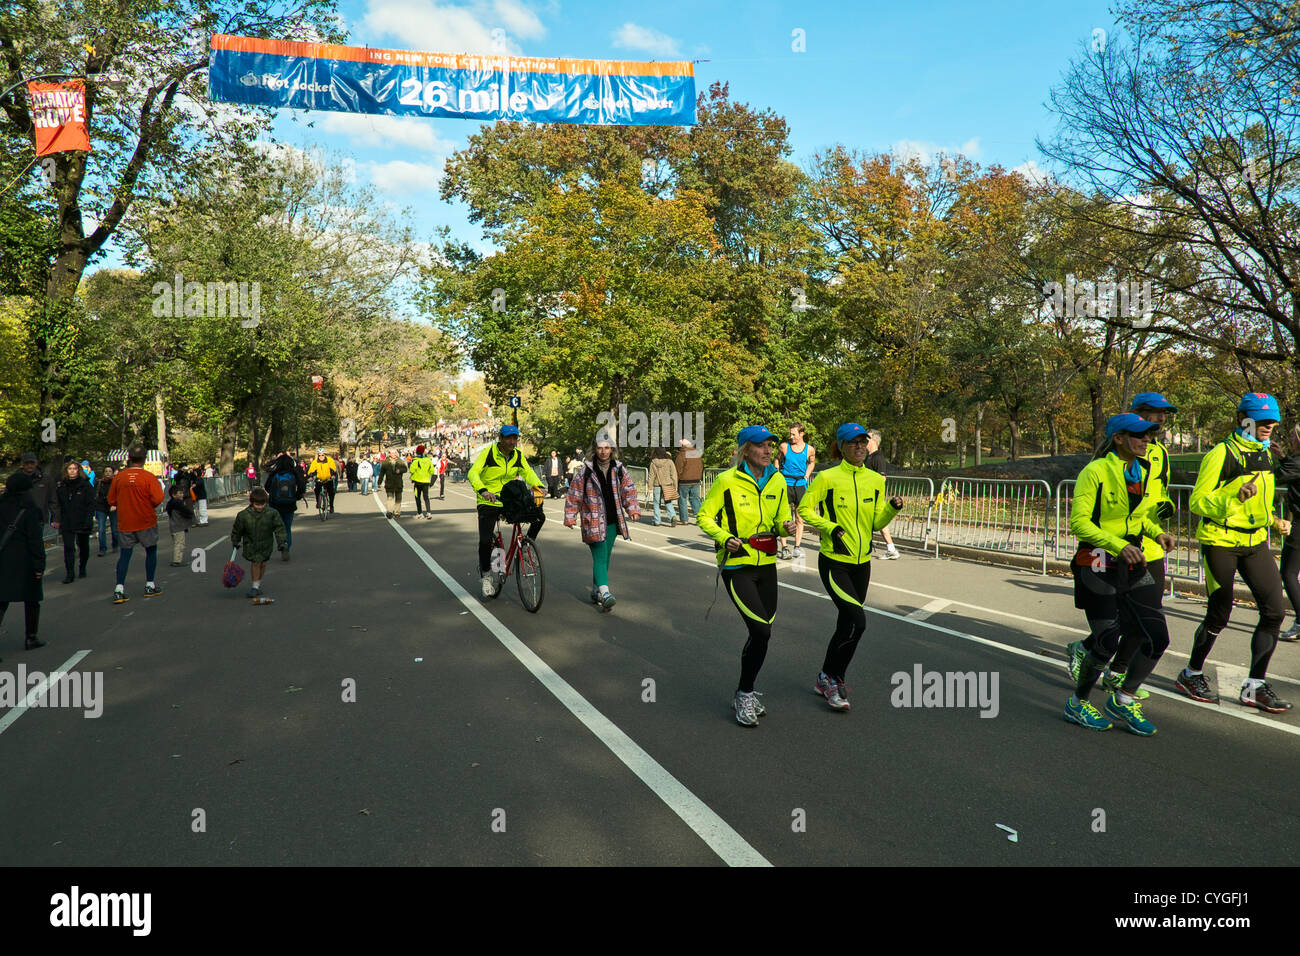 November 4, 2012, New York, NY, USA. I corridori attraversano il 26 mile mark del percorso della maratona di New York, che è stato annullato a causa di un uragano di sabbia. Molti concorrenti correva il Central Park tratto di rotta malgrado la cancellazione. Foto Stock